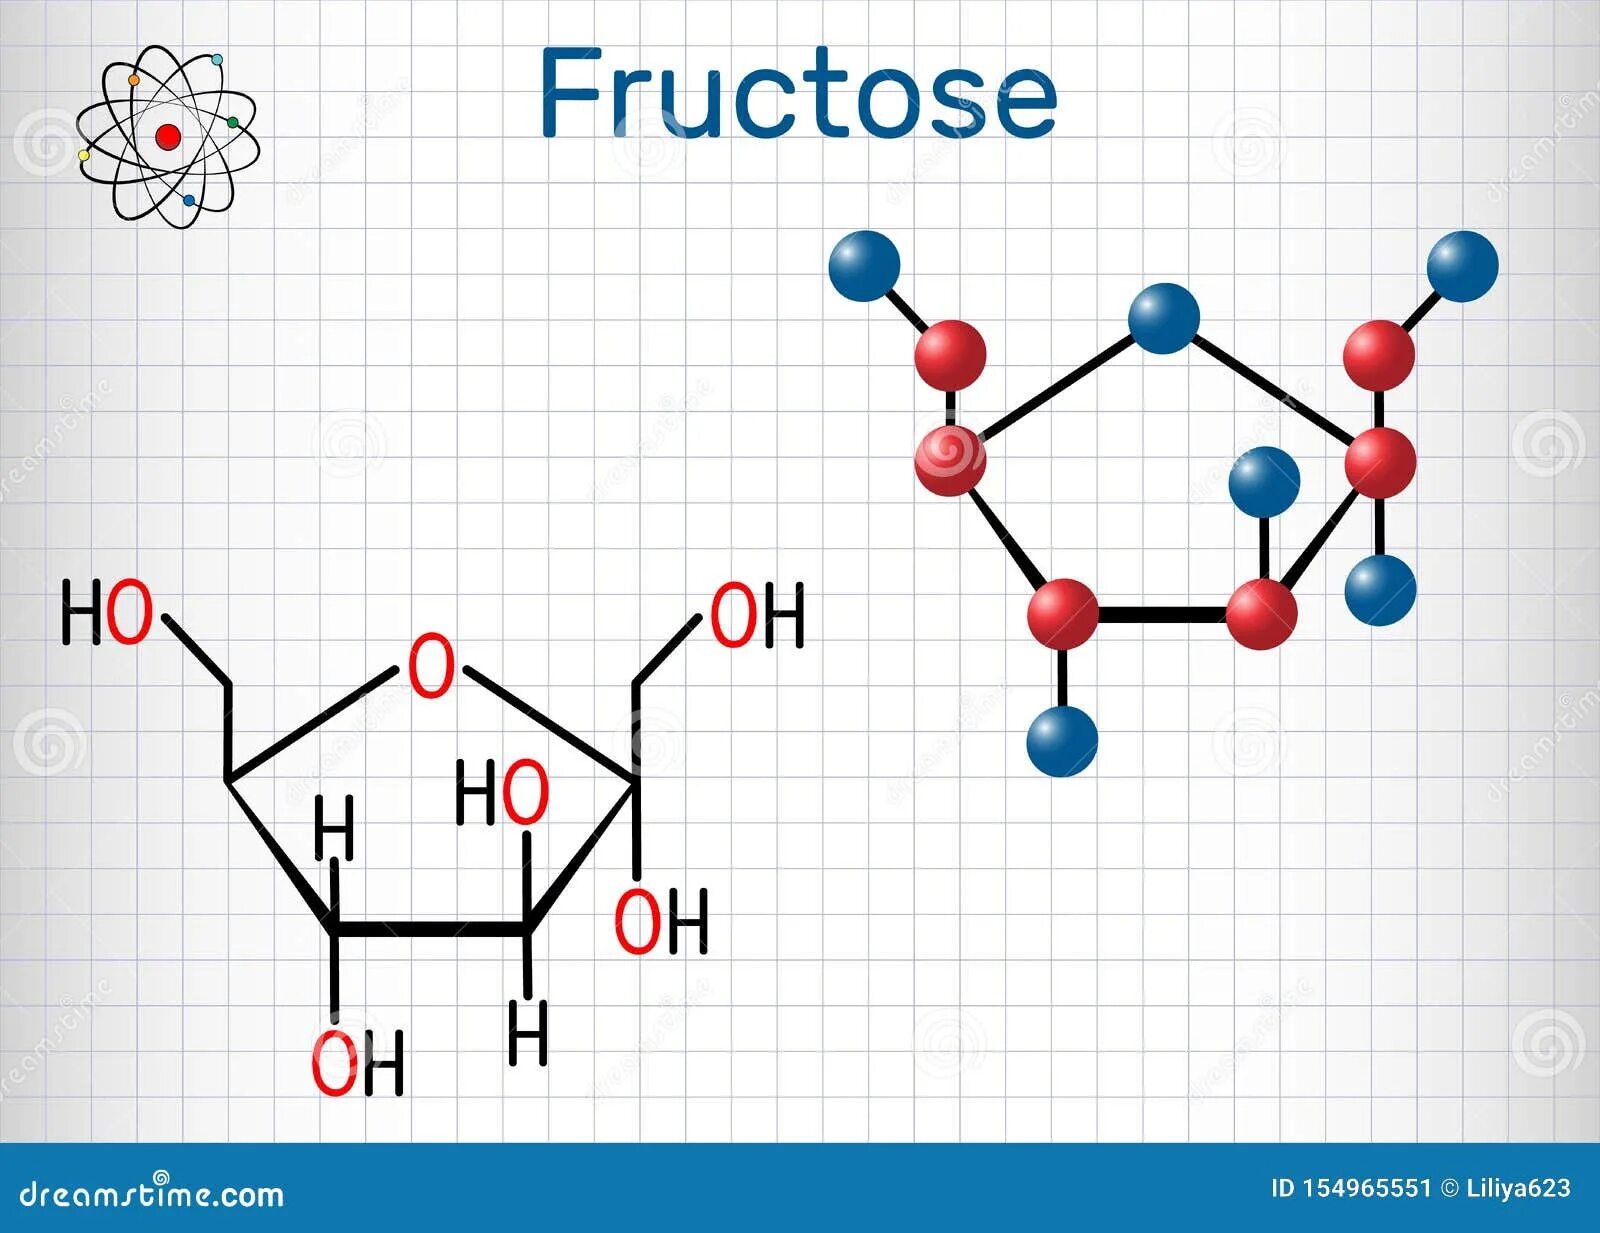 Молекула фруктозы формула. Молекулярная и структурная формула фруктозы. Структурная молекула фруктозы. Молекулярная формула фруктозы. Фруктоза циклическая